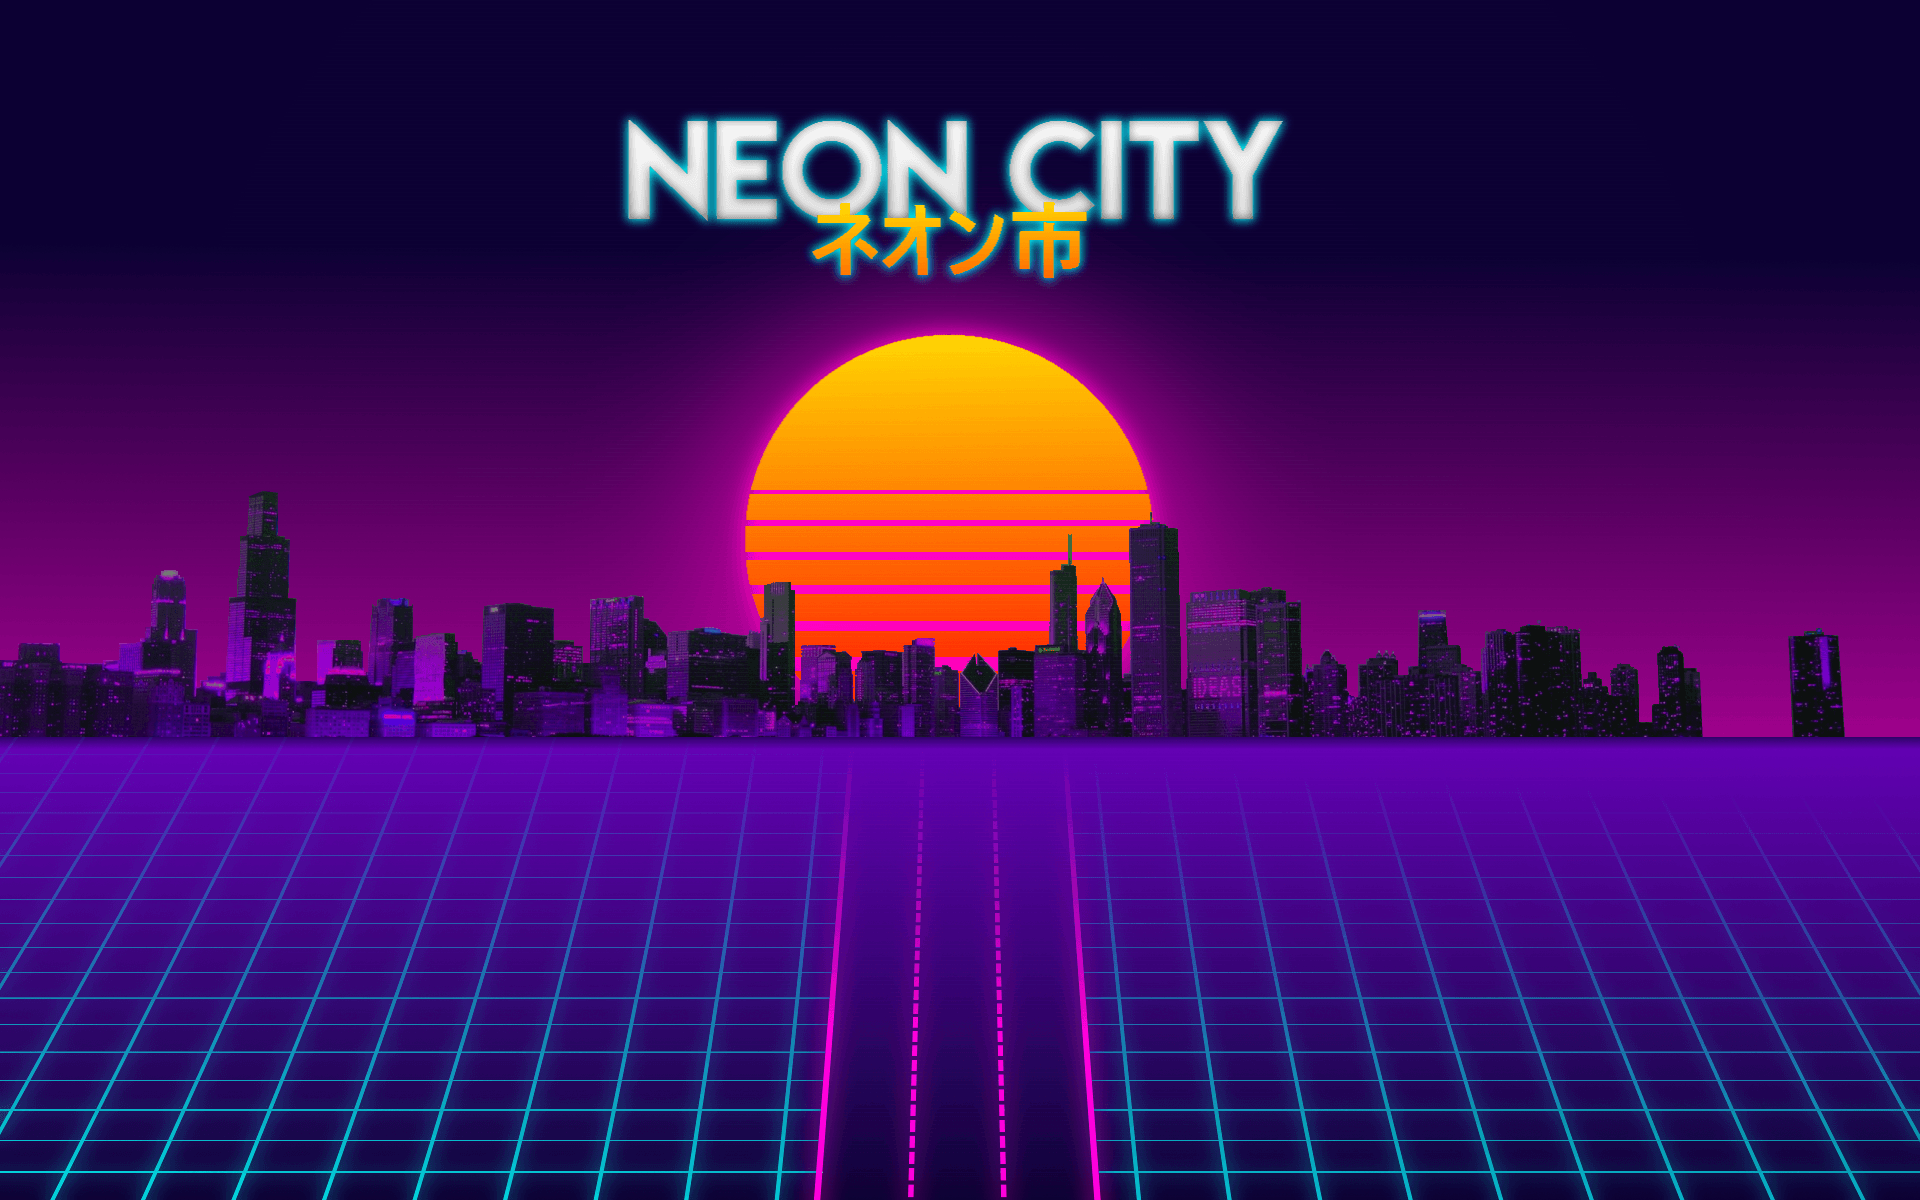 Neon City Vaporwave Wallpapers - 4k, HD Neon City Vaporwave Backgrounds ...